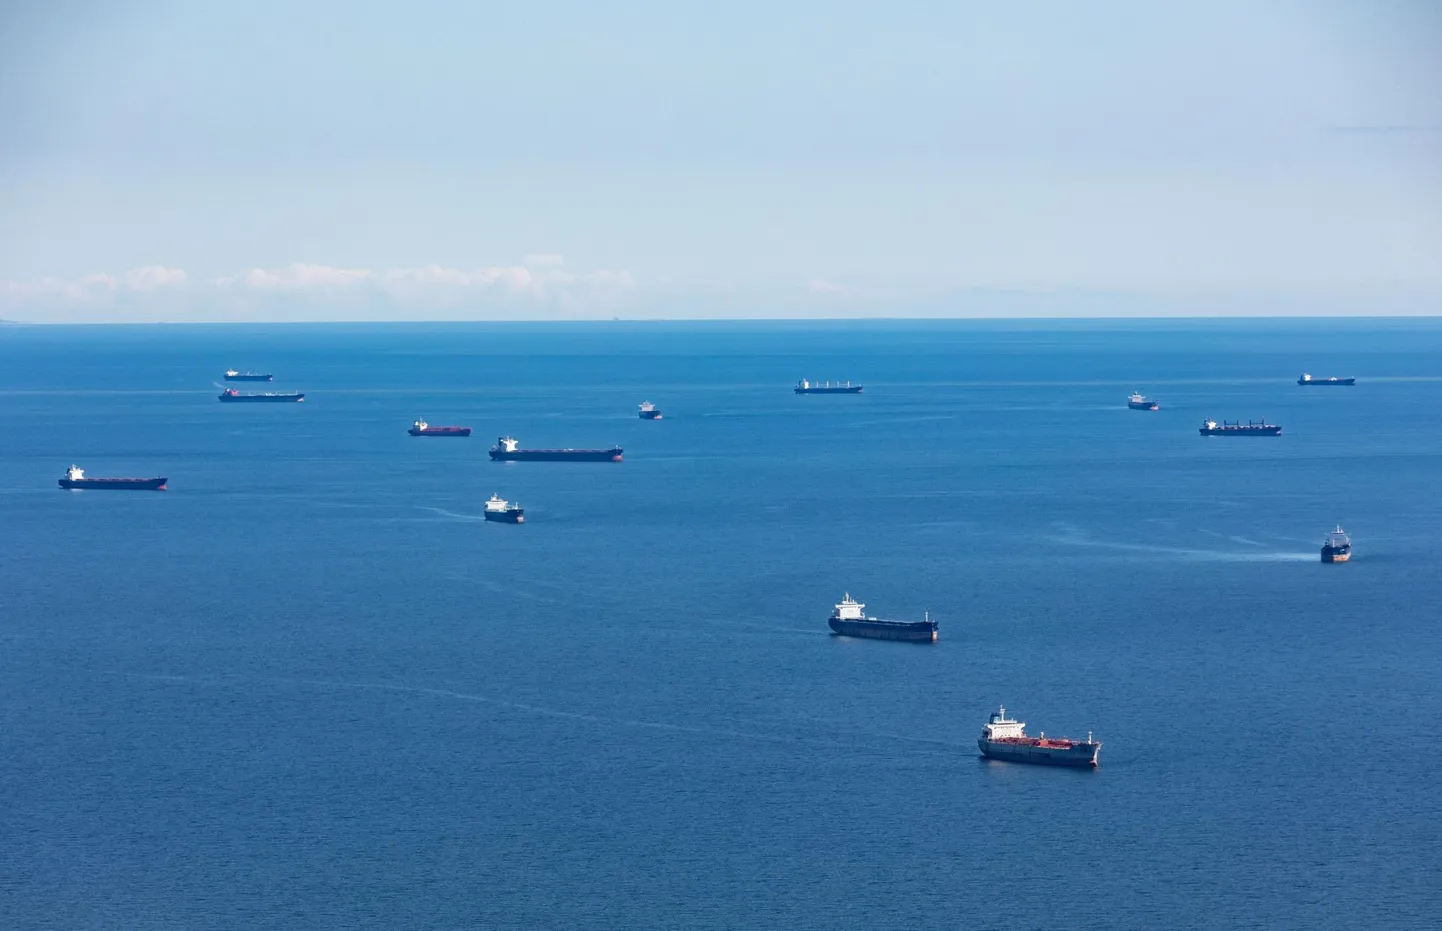 Venemaa sadamatesse pääsu ootavate tankerite ja kaubalaevade mitteametlik ankruala Eesti majandusvööndisse kuuluval Soome lahe osal.